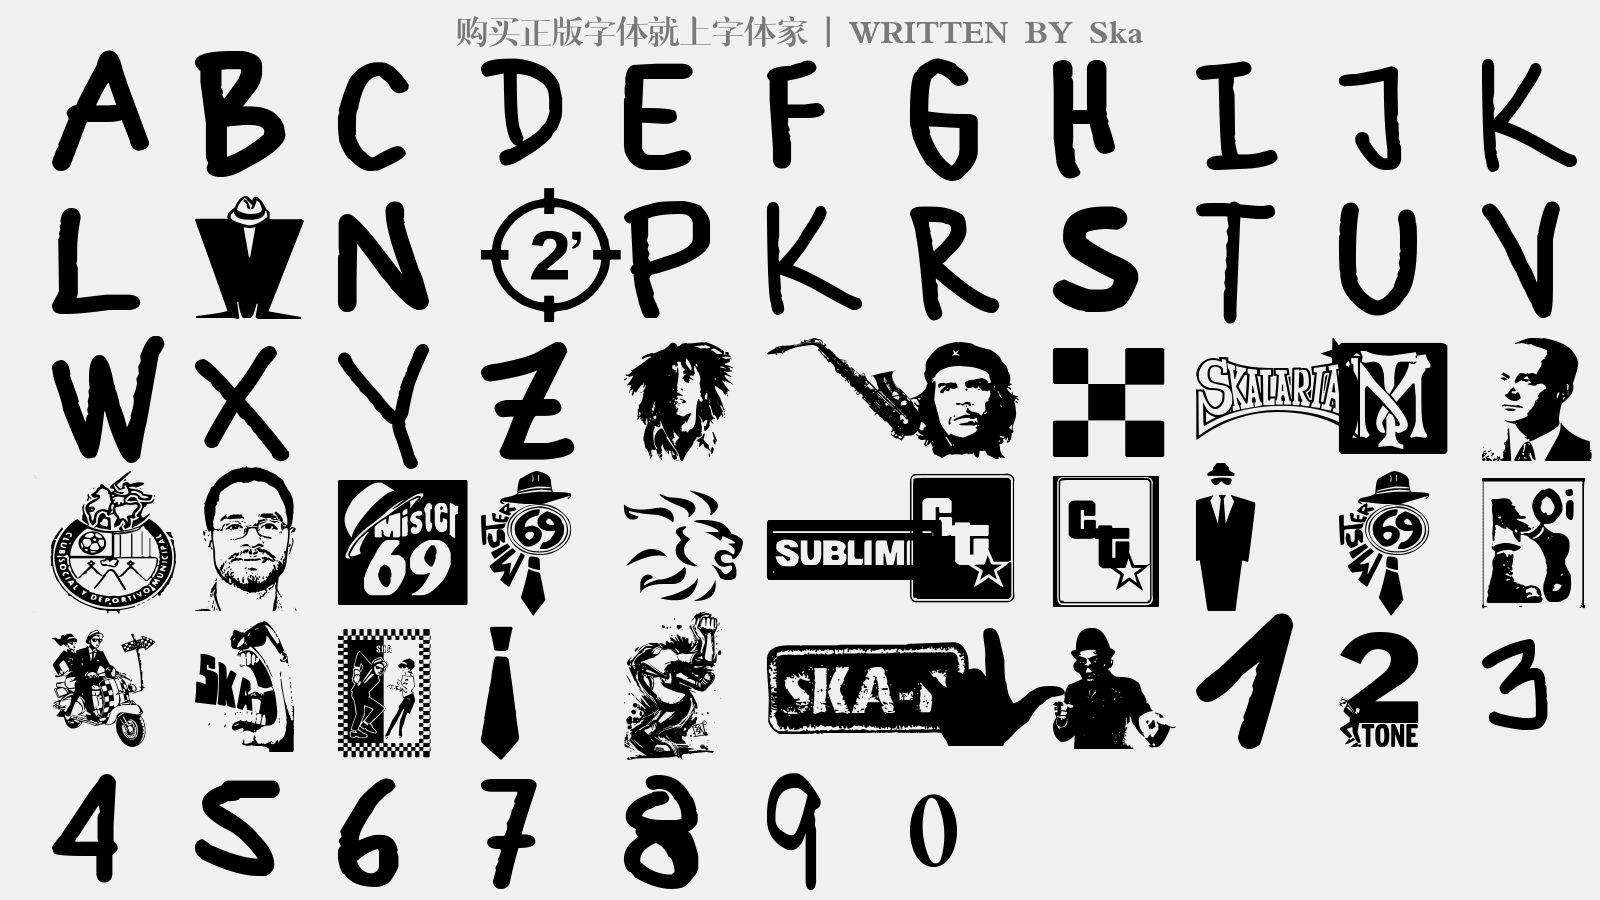 Ska - 大写字母/小写字母/数字